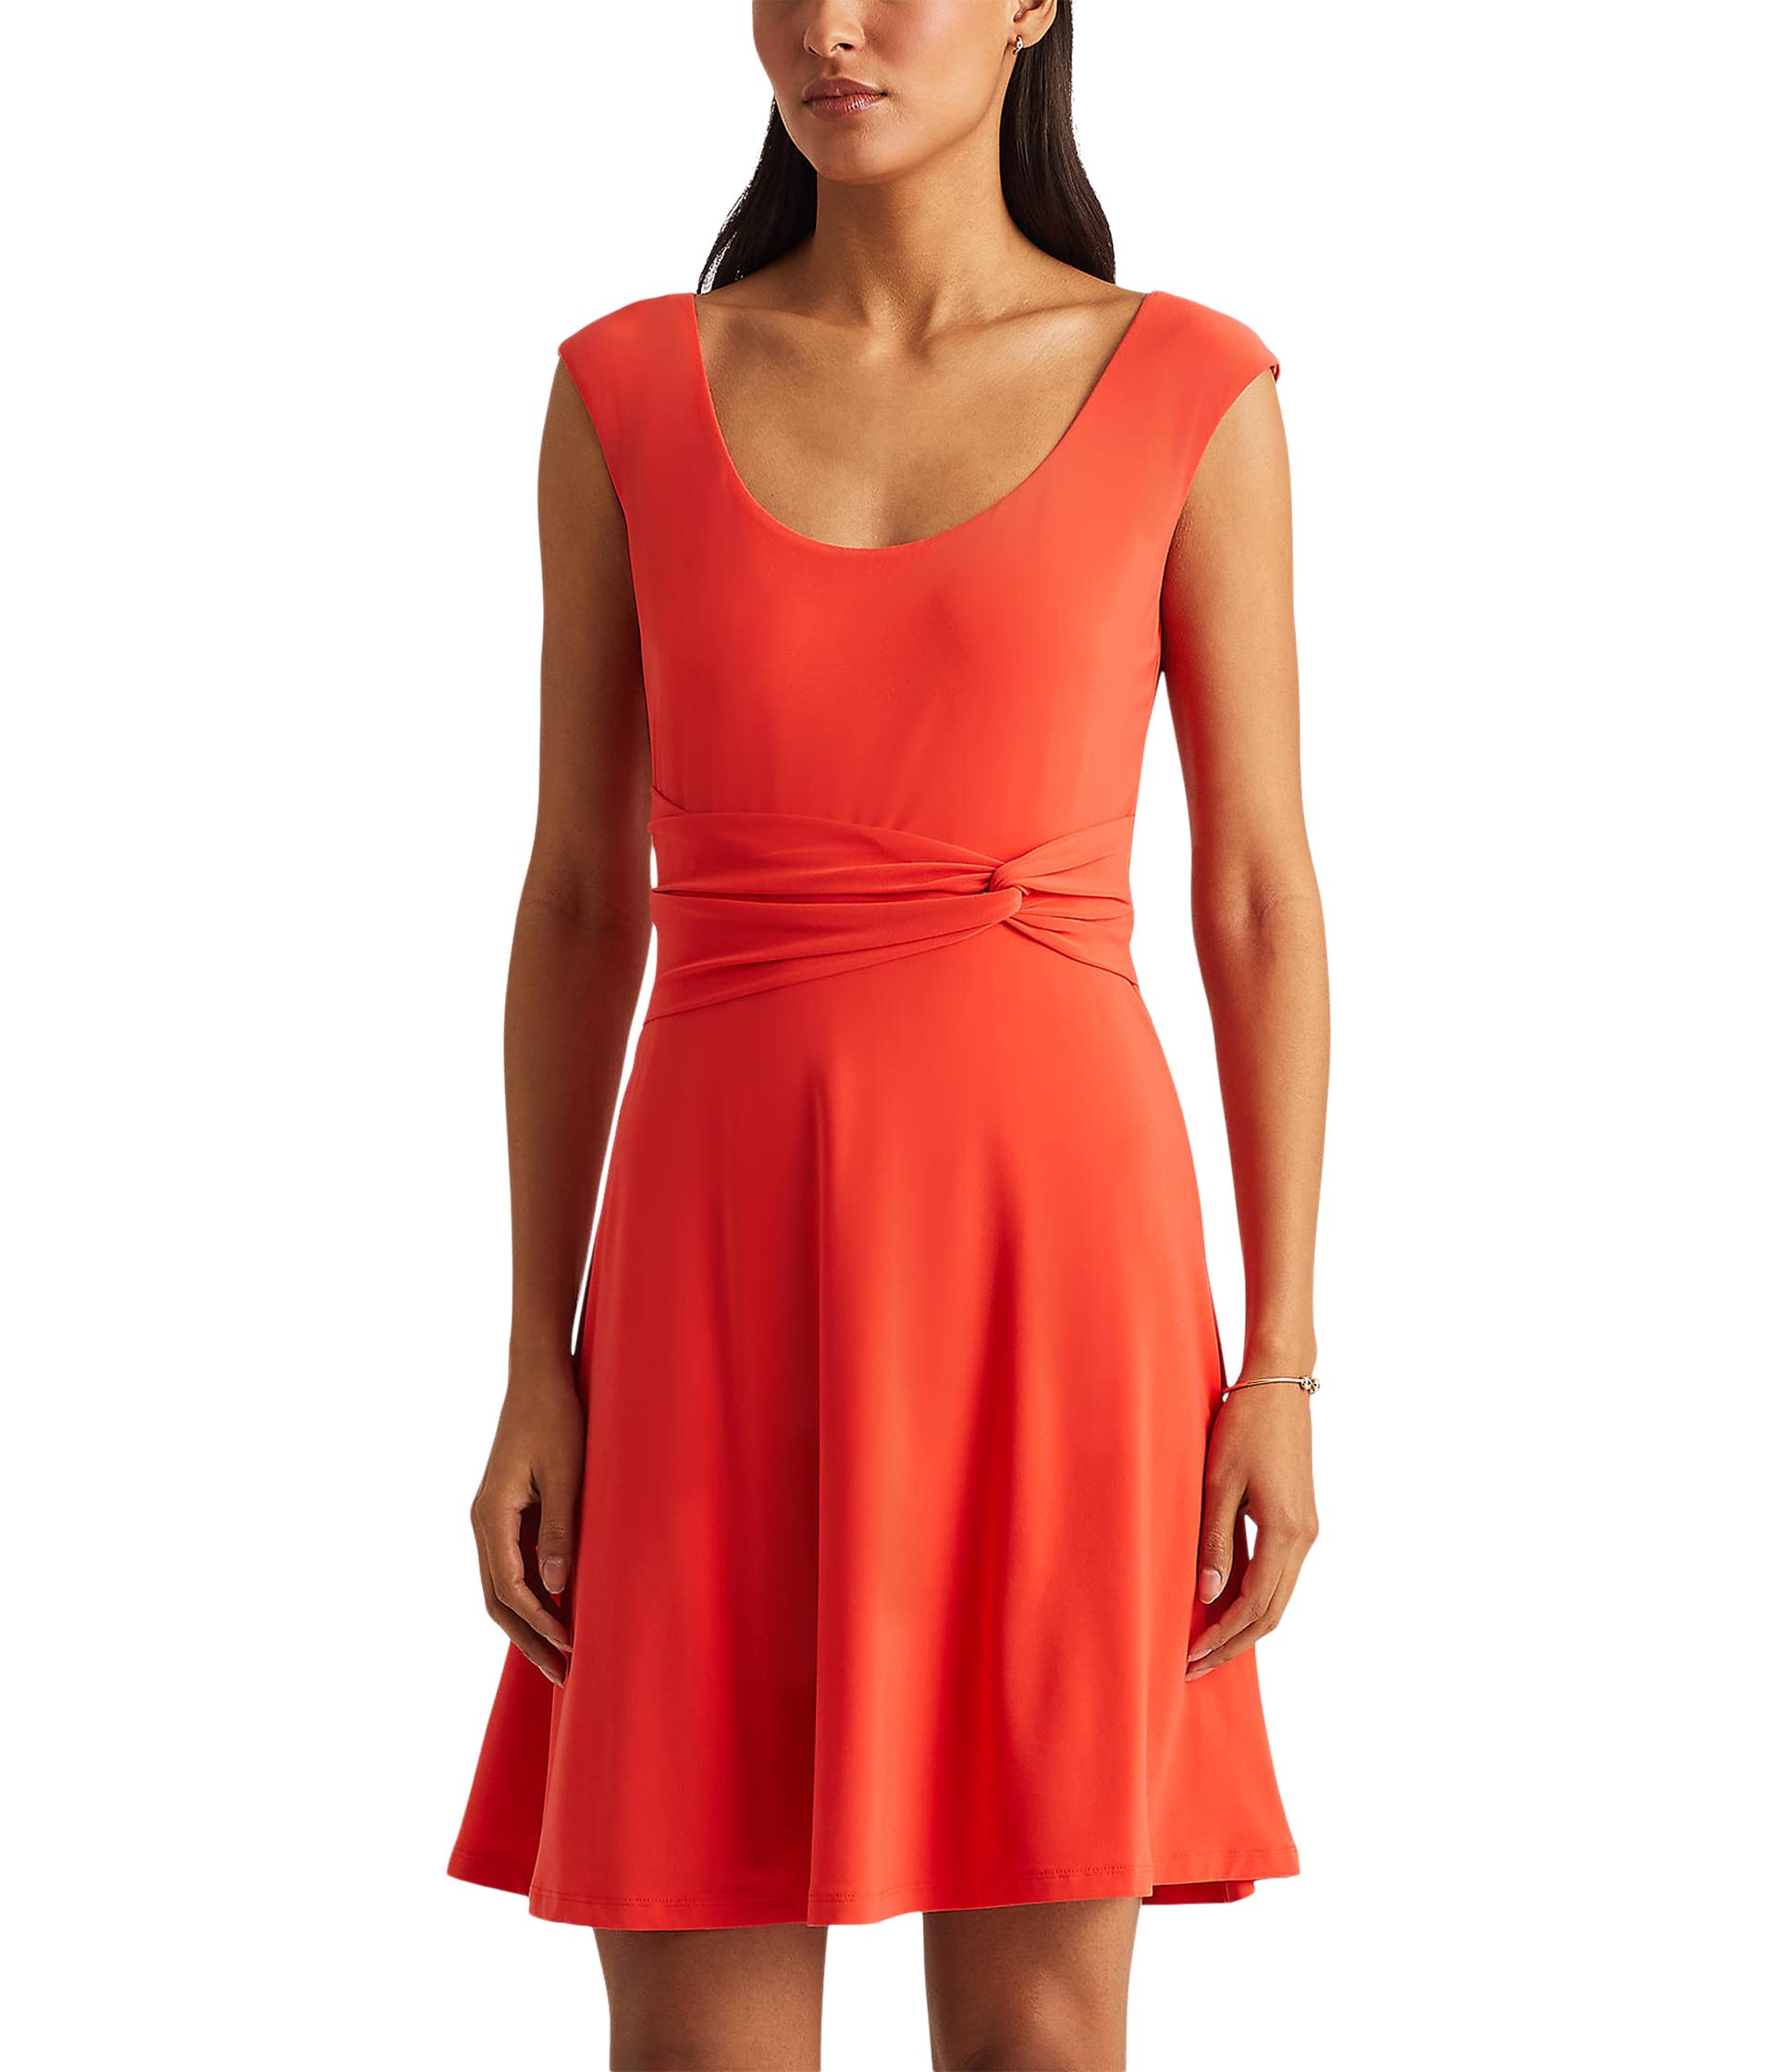 Ralph Lauren Women's Scoop Neck Jersey Dress Red Size 12